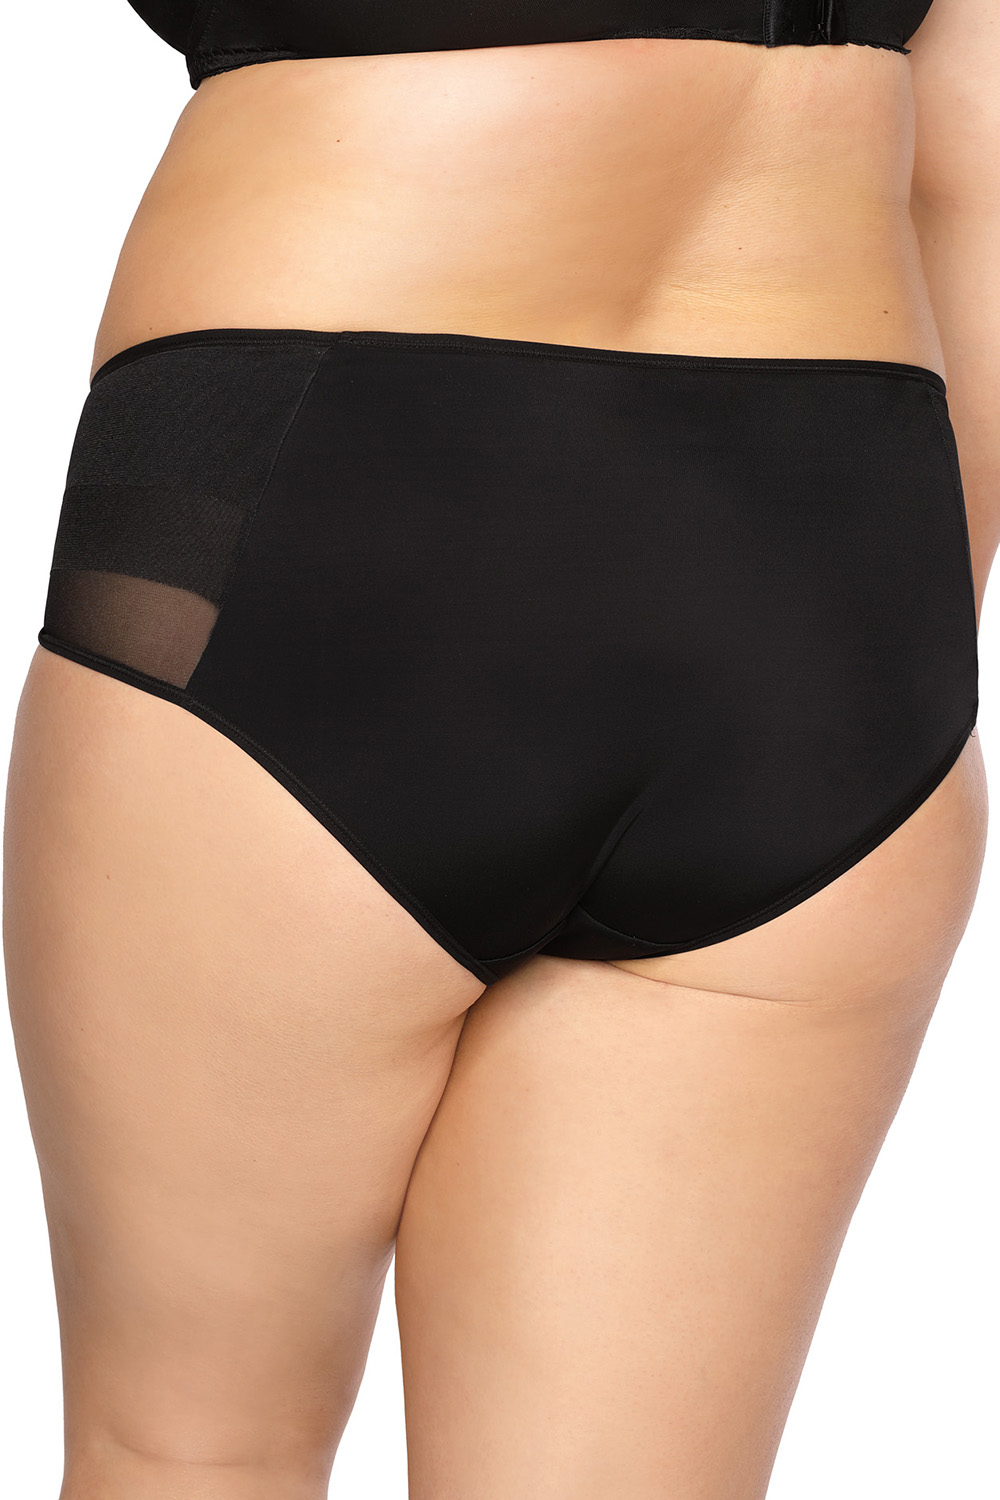 Panties model 137166 Gaia black Ladies